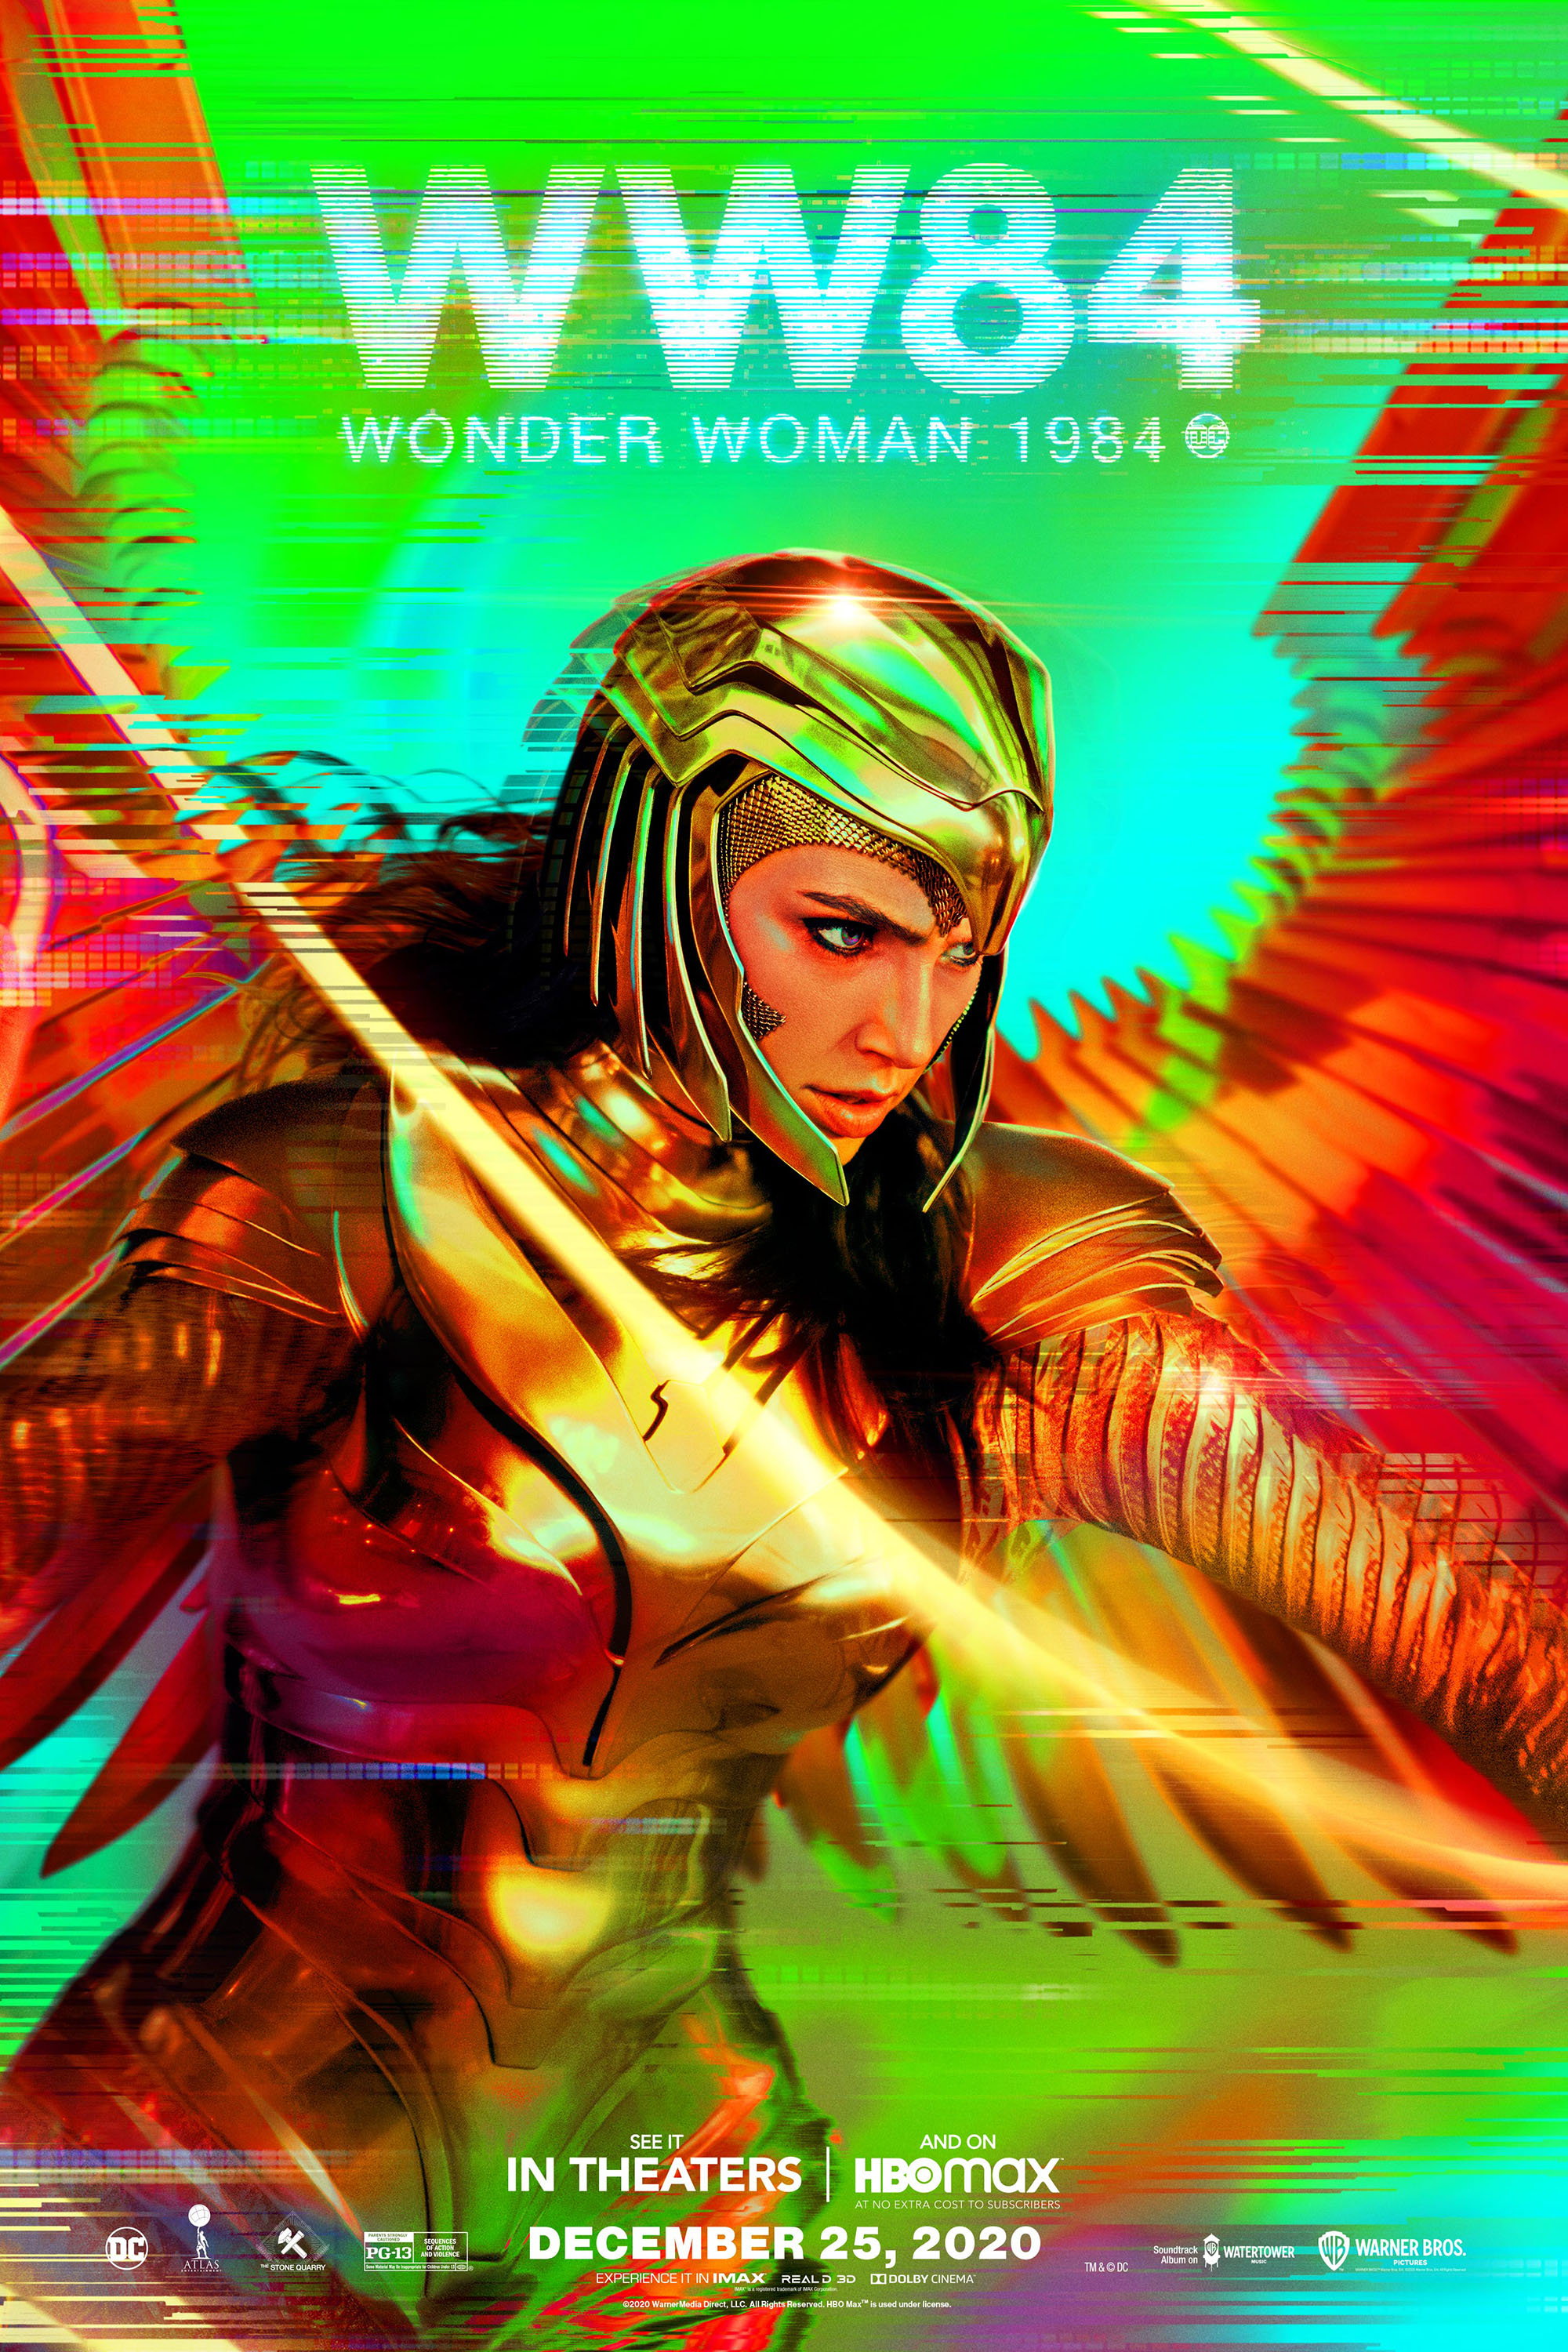 Still of Wonder Woman 1984